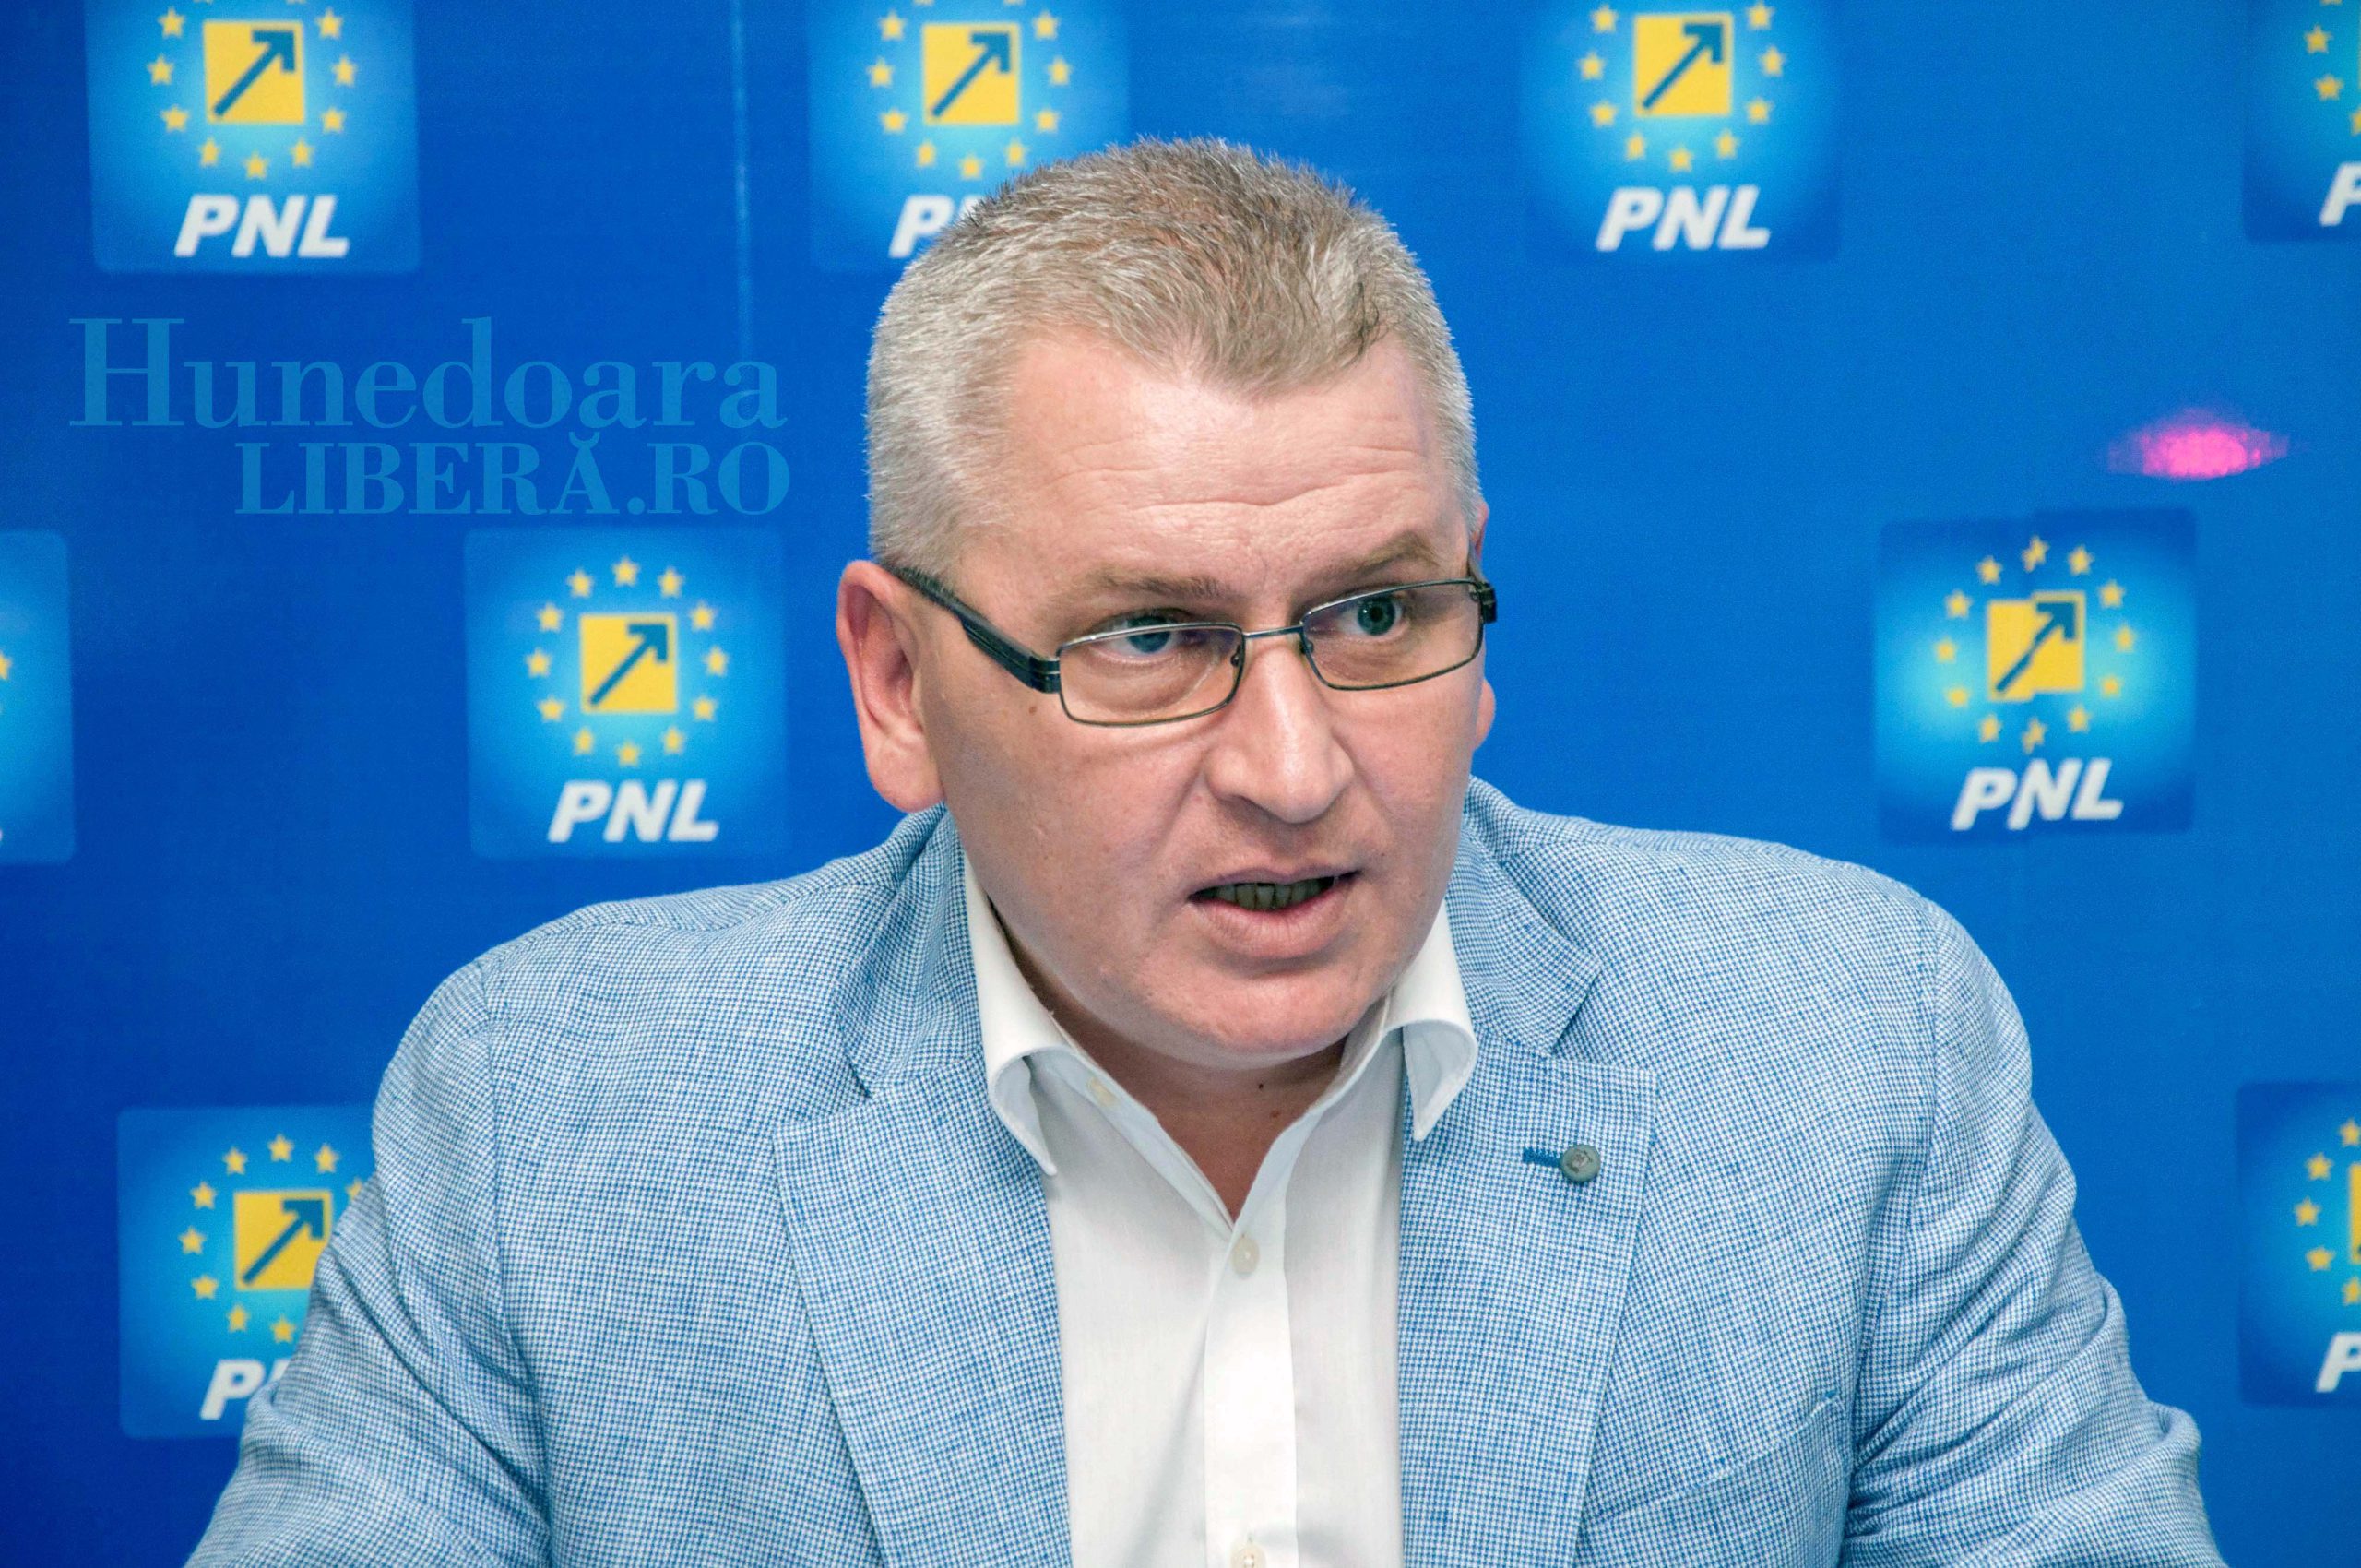  Deputatul PNL Florin Roman anunţă că depune plângere penală împotriva şefului jandarmilor